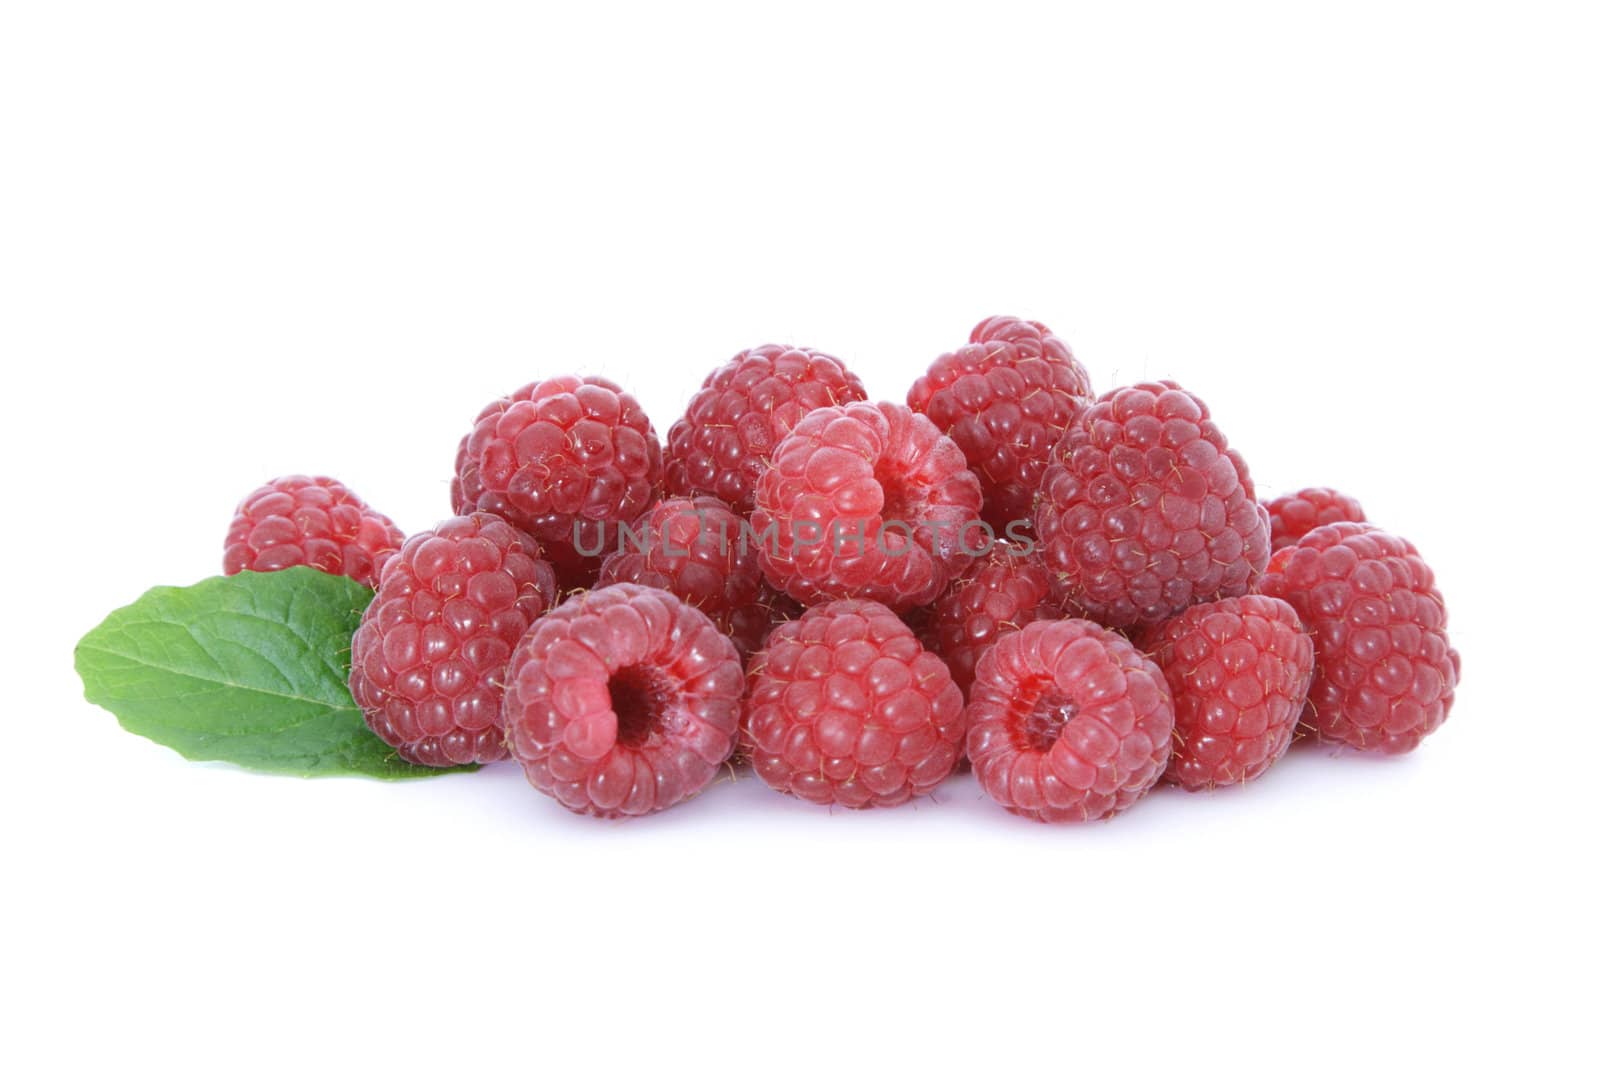 Raspberries by kaarsten